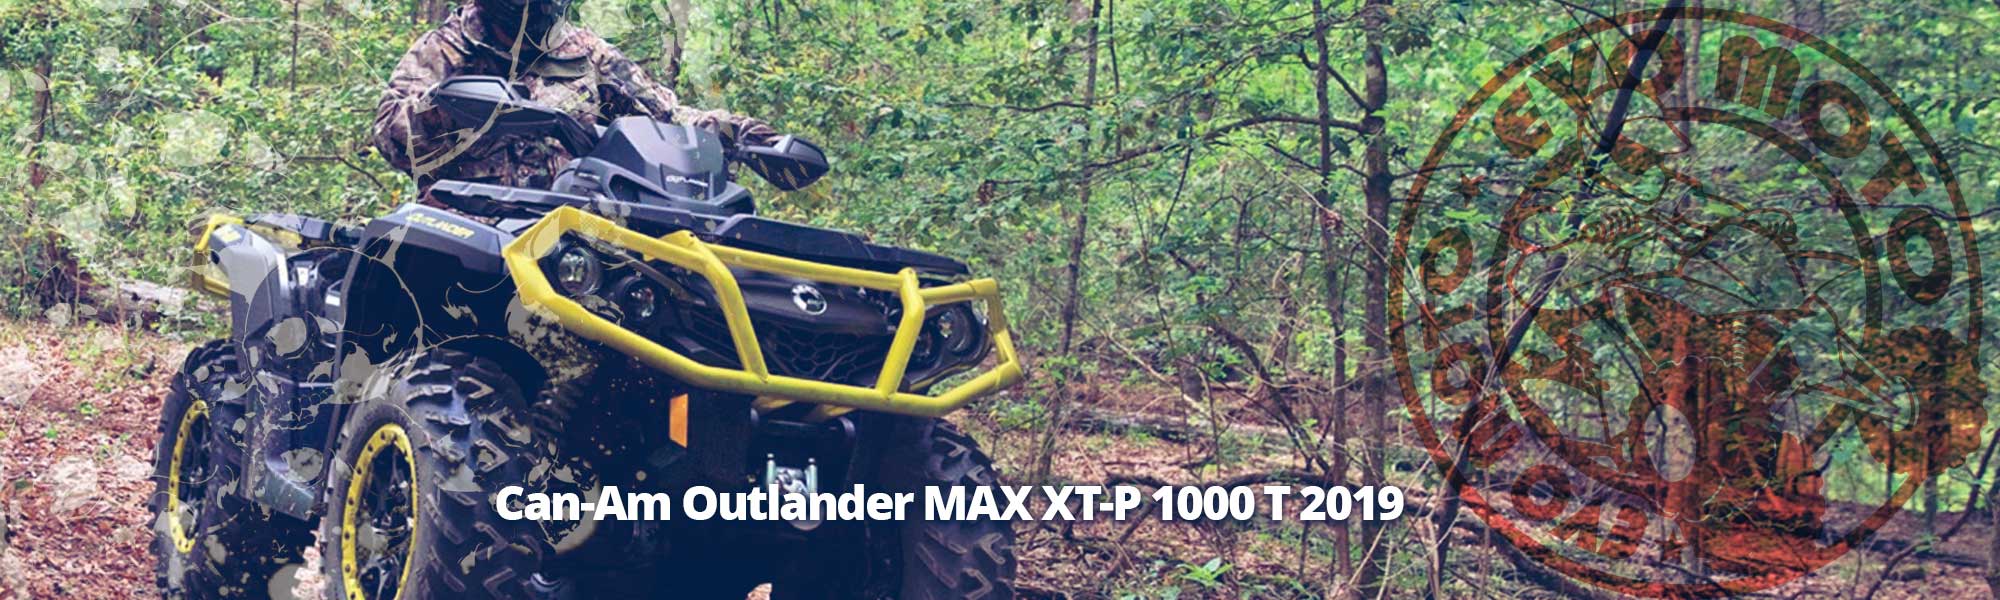 Can-Am Outlander MAX XT-P 1000 T 2019